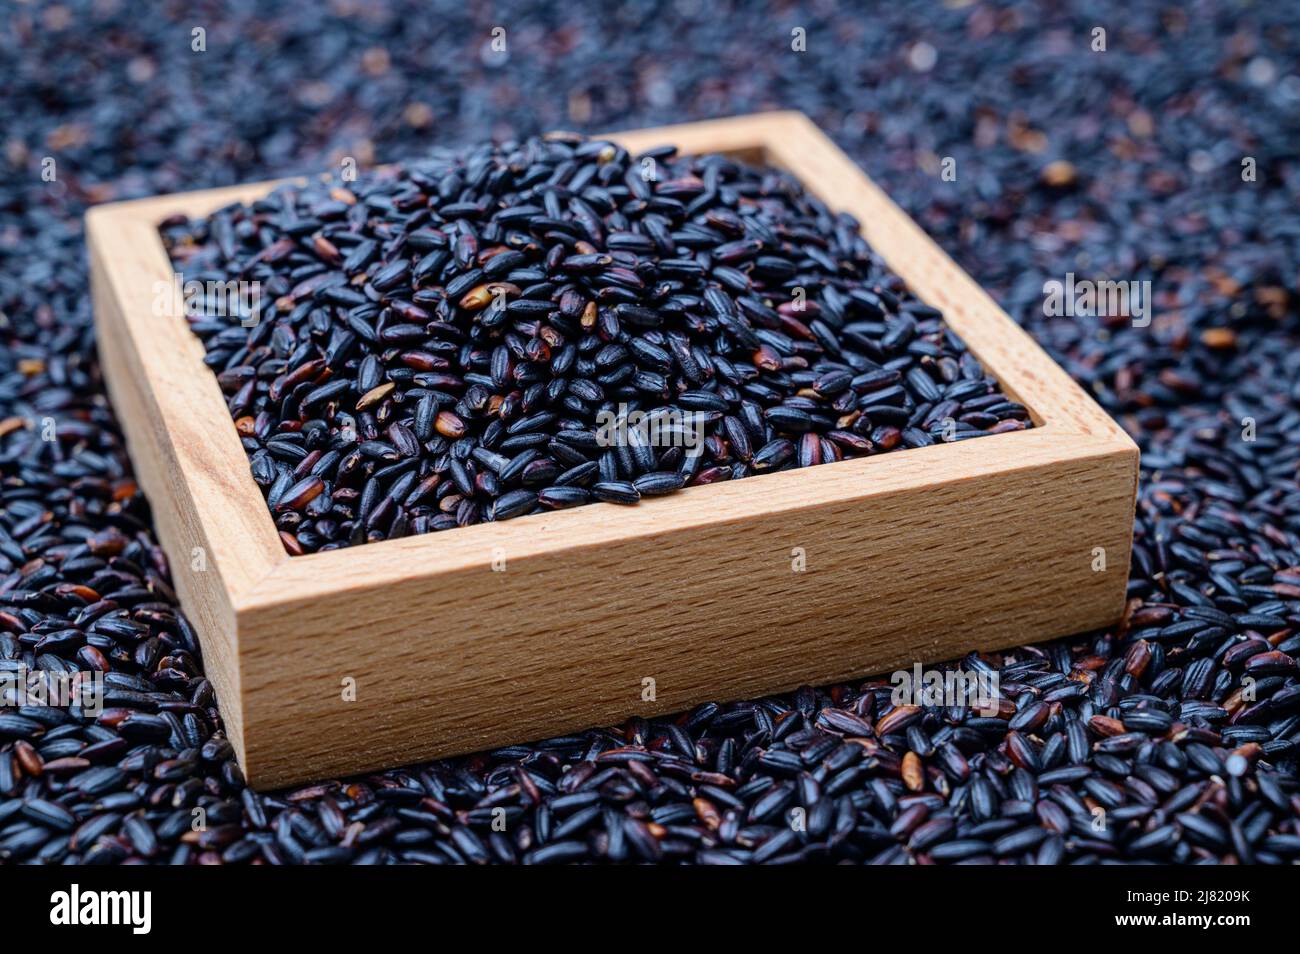 Un fondo con arroz negro apilado y un tazón de madera que contiene arroz negro. Foto de stock